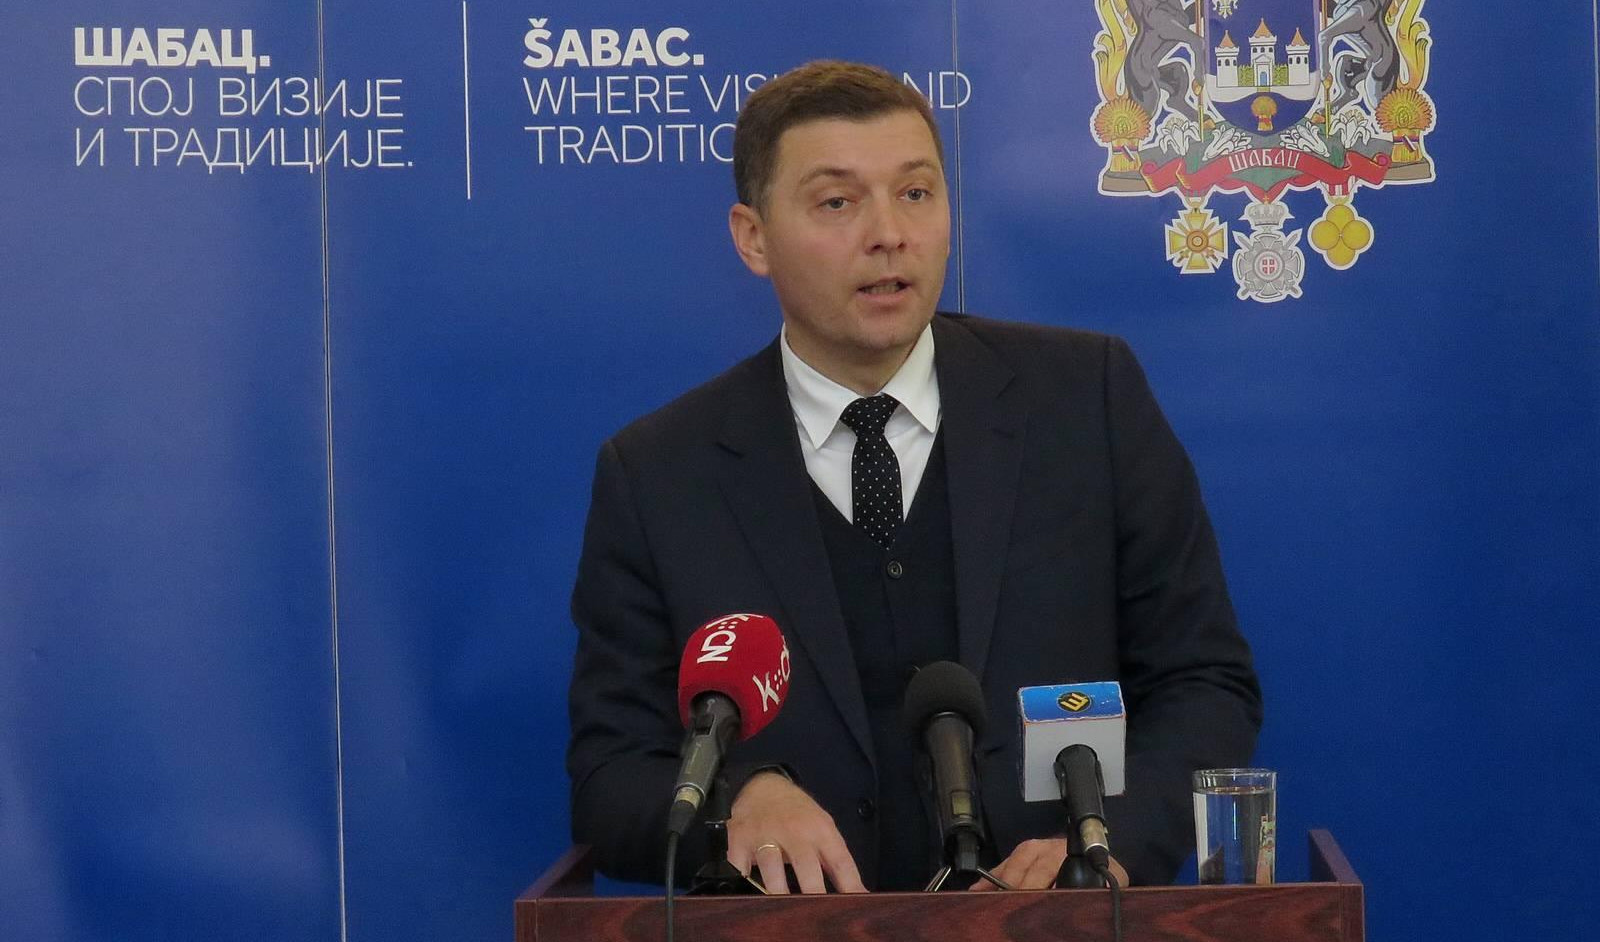 EMBARGO.RS: Sudija ćerkin posao "platila oslobađanjem od lopovluka" gradonačelnika Zelenovića!?